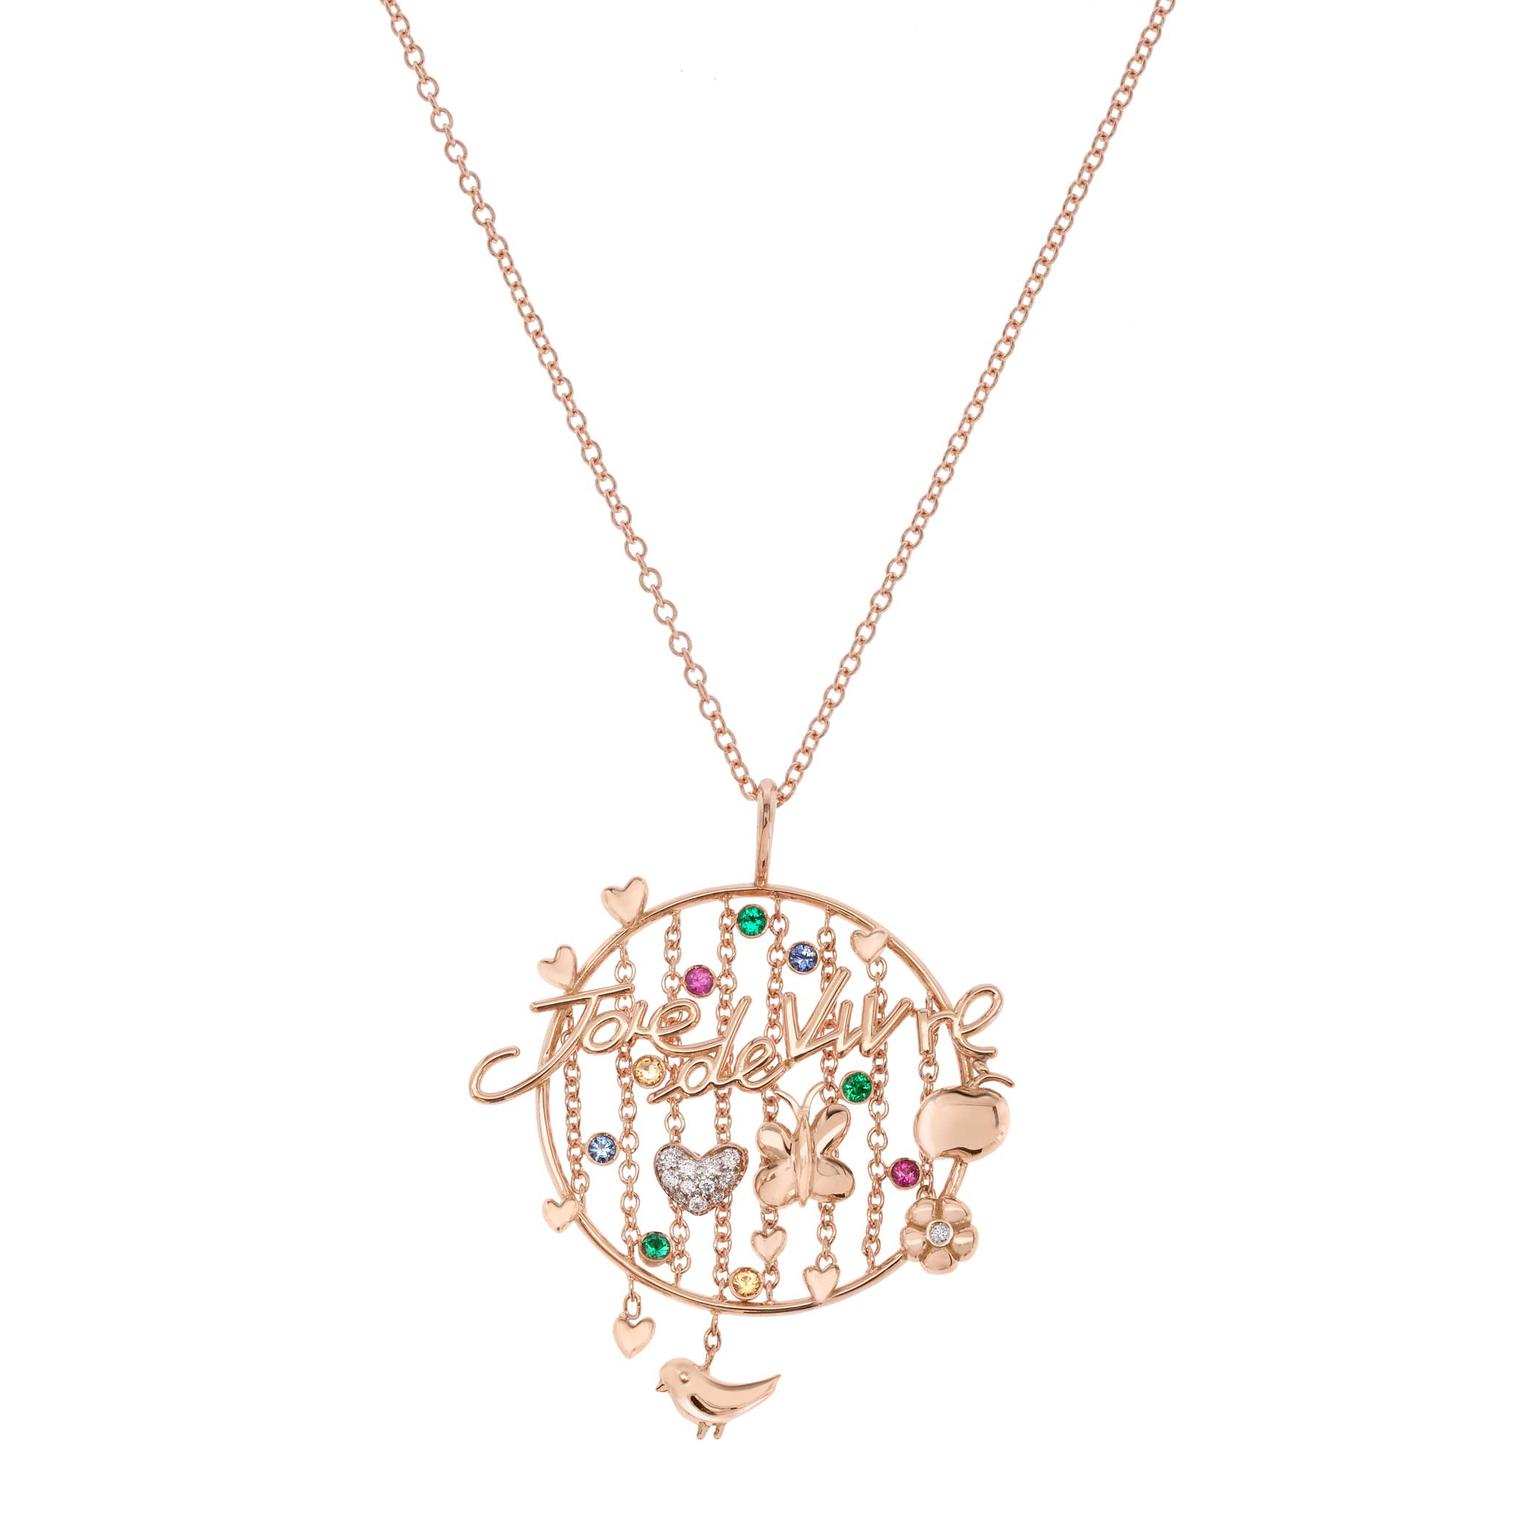 Francesca Villa Joie de Vivre rose gold necklace